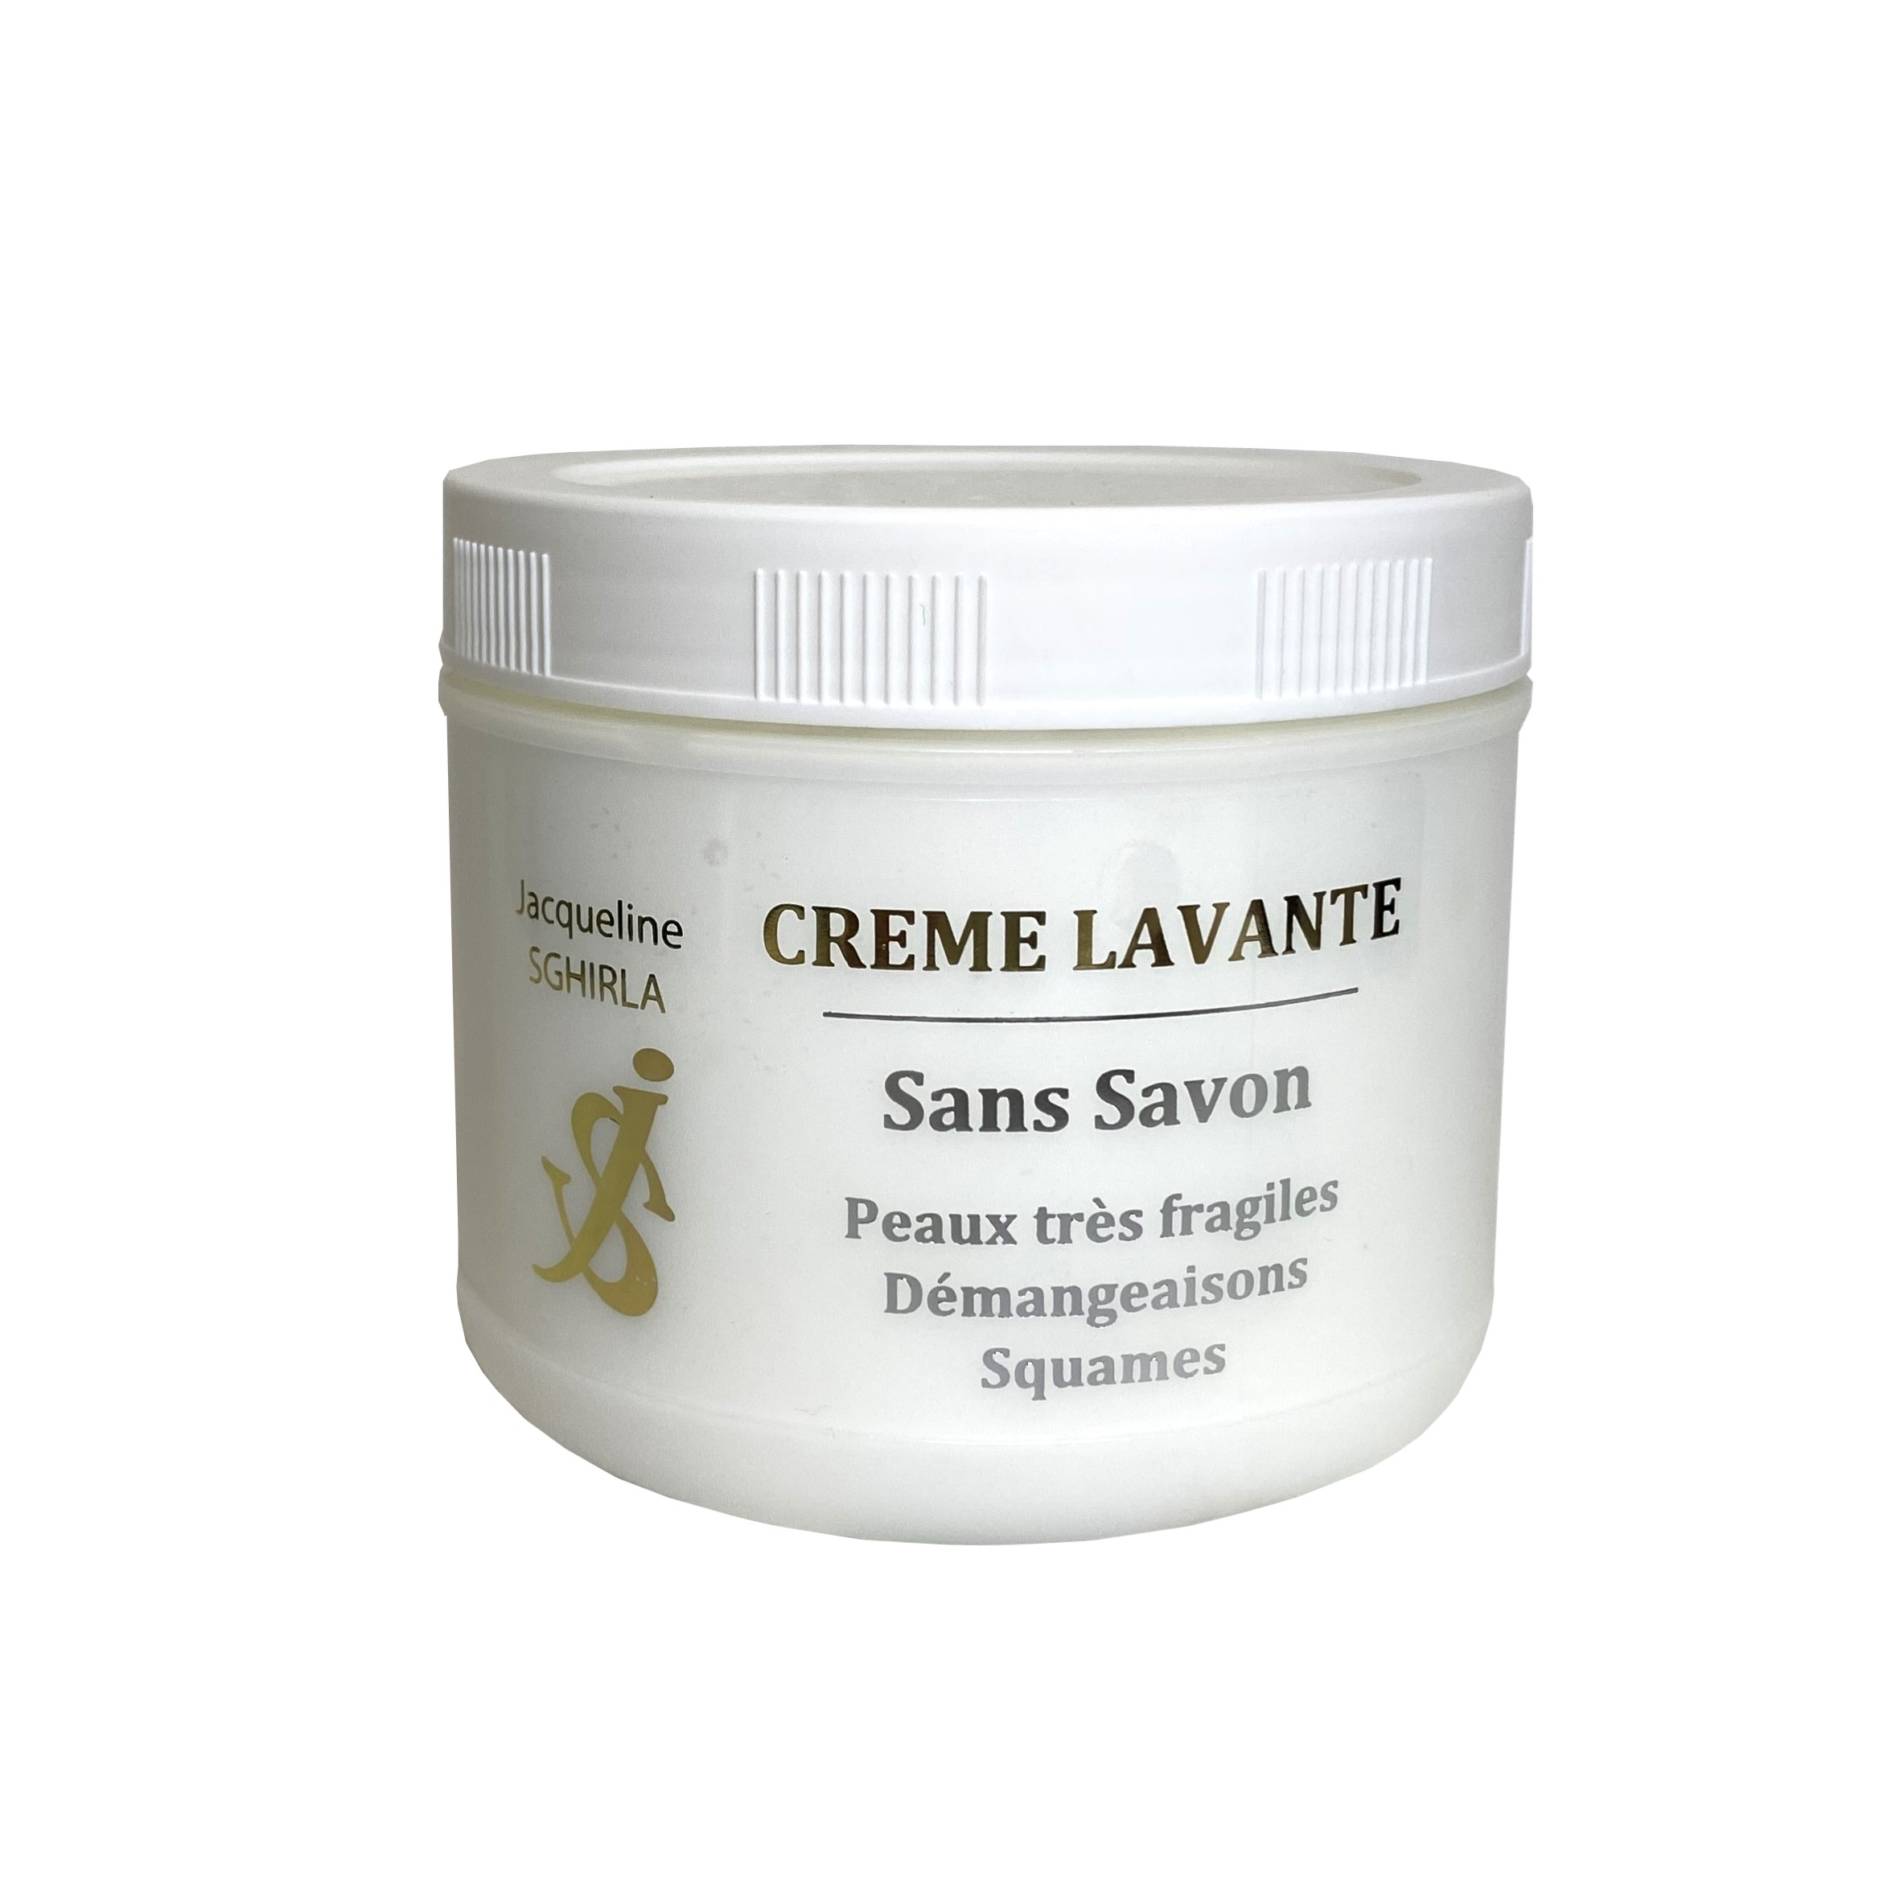 Crème Lavante creme lavante jacqueline sghirla comsetique france scaled